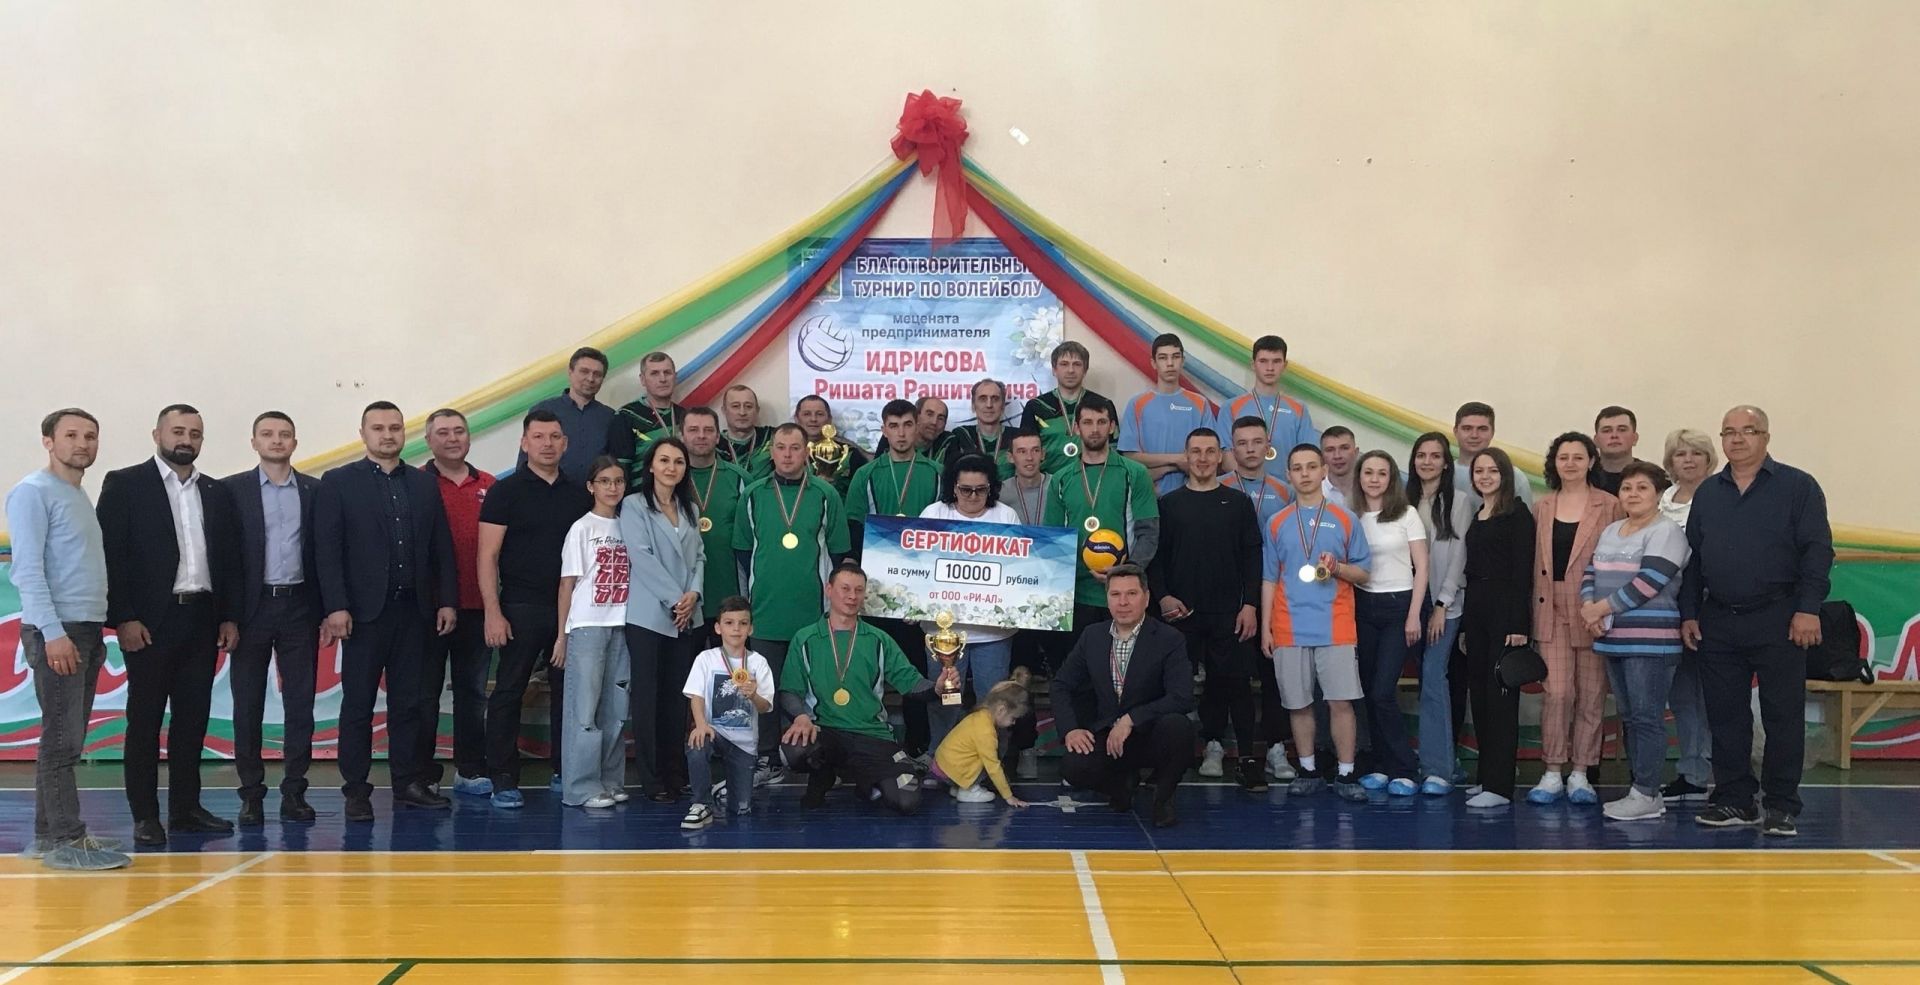 Благотворительный турнир по волейболу состоялся в Бугульминском районе